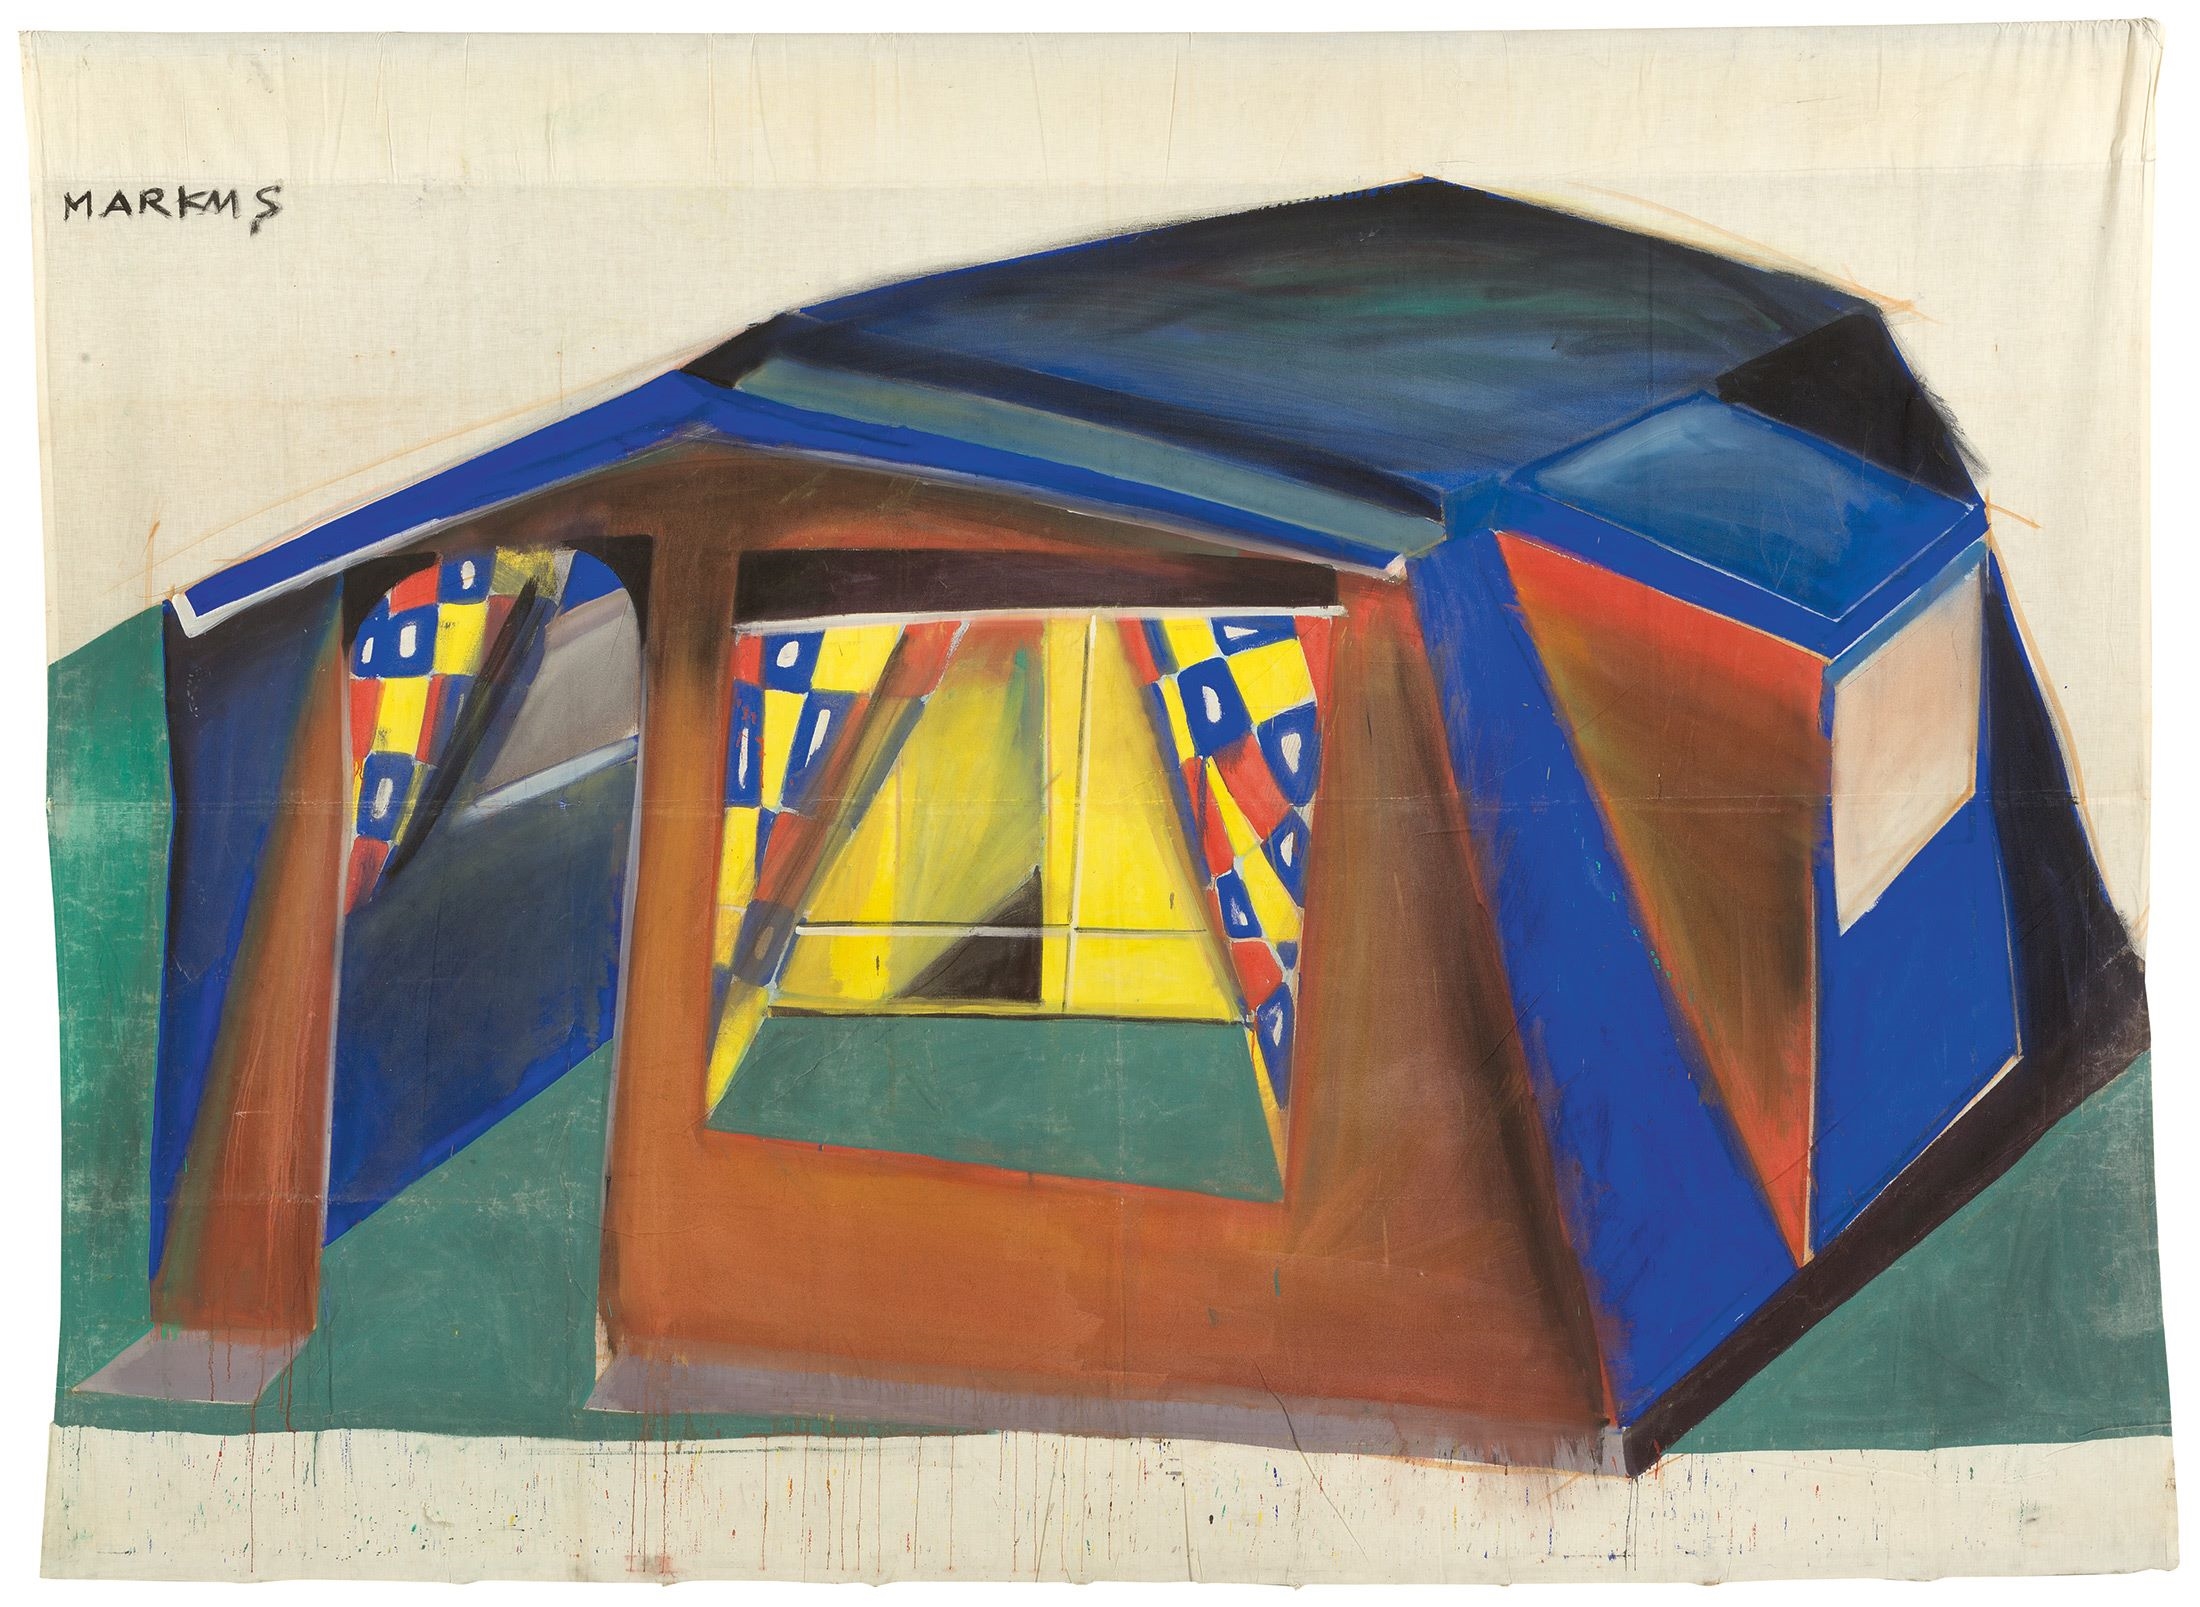 Untitled (Tent) by Markus Lüpertz, 1967